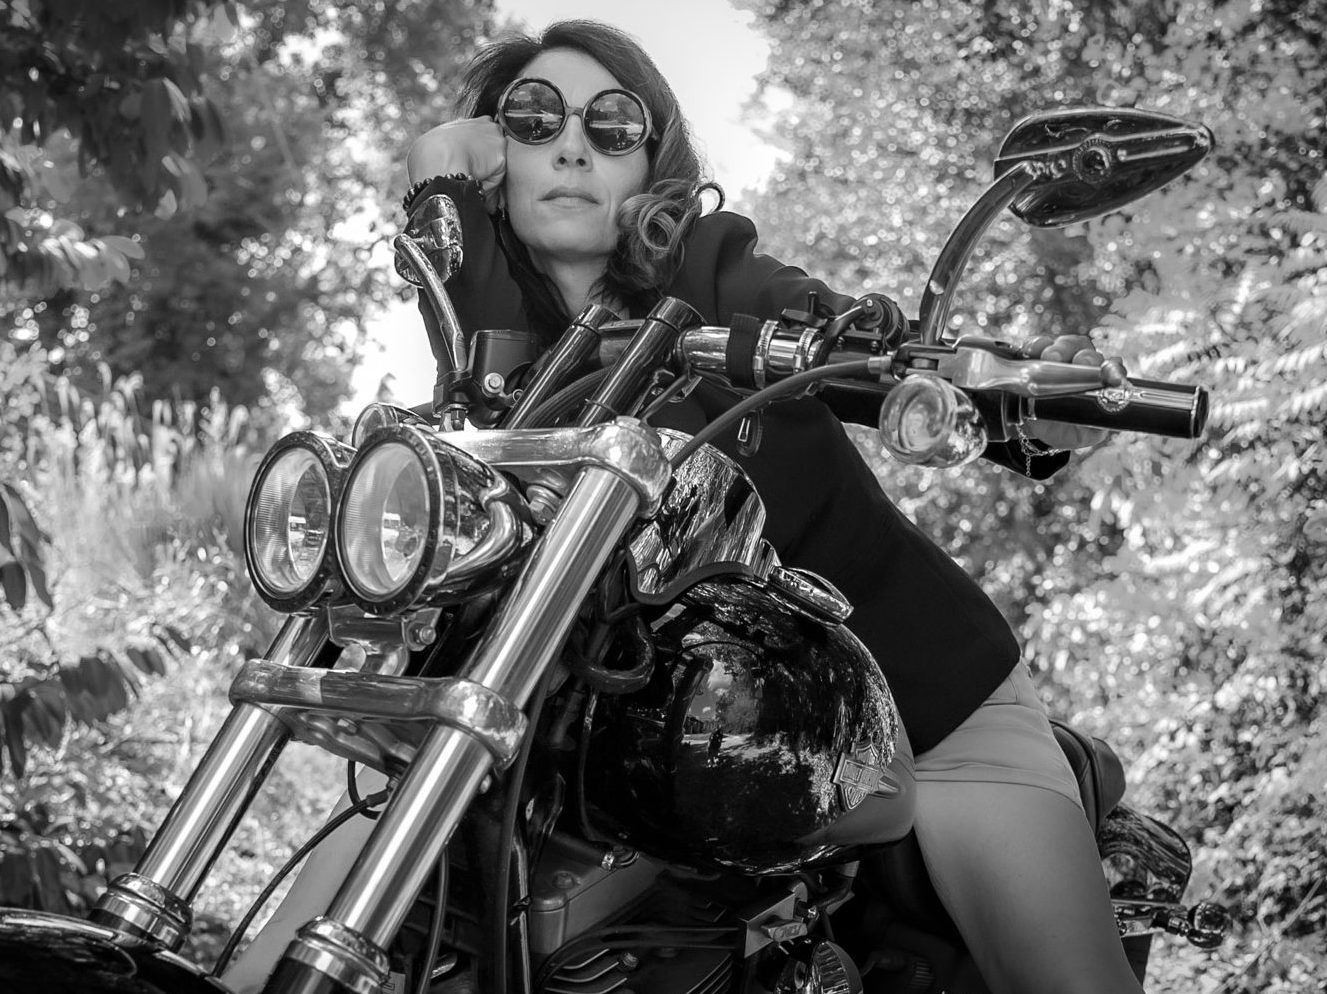 Stéphanie dans le rôle d'une biker